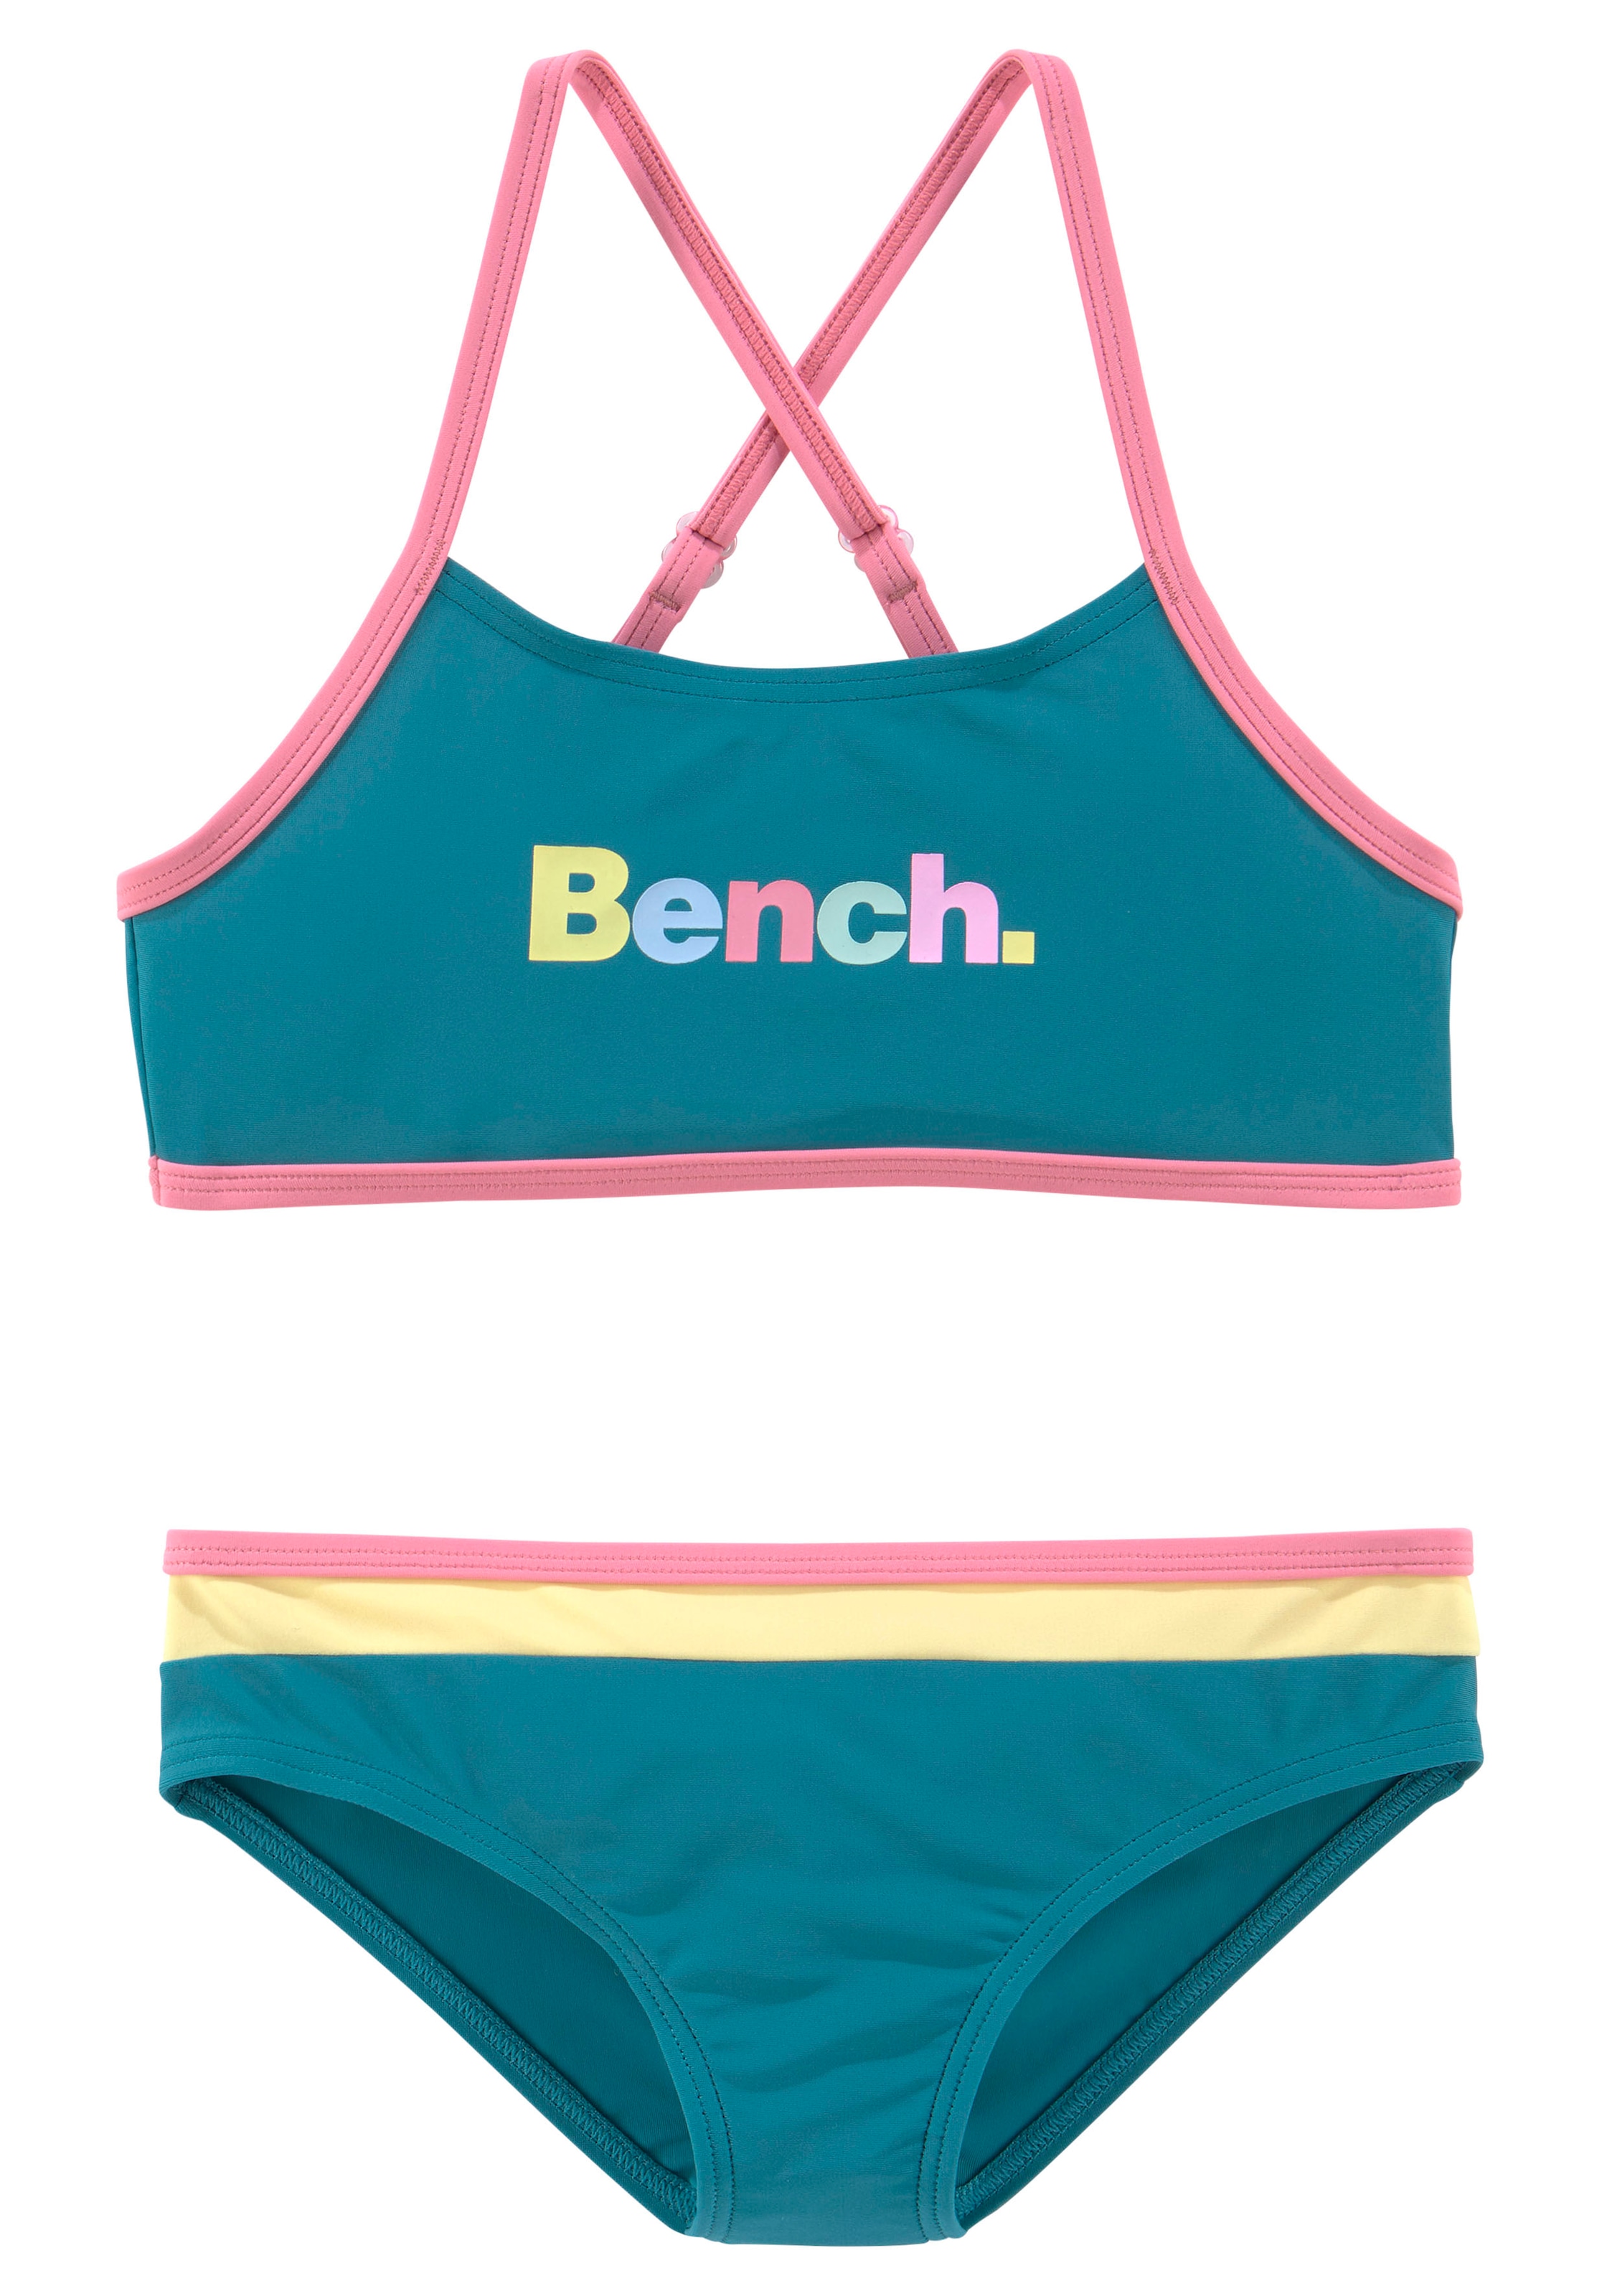 Bench. Bustier-Bikini, mit bunten Details